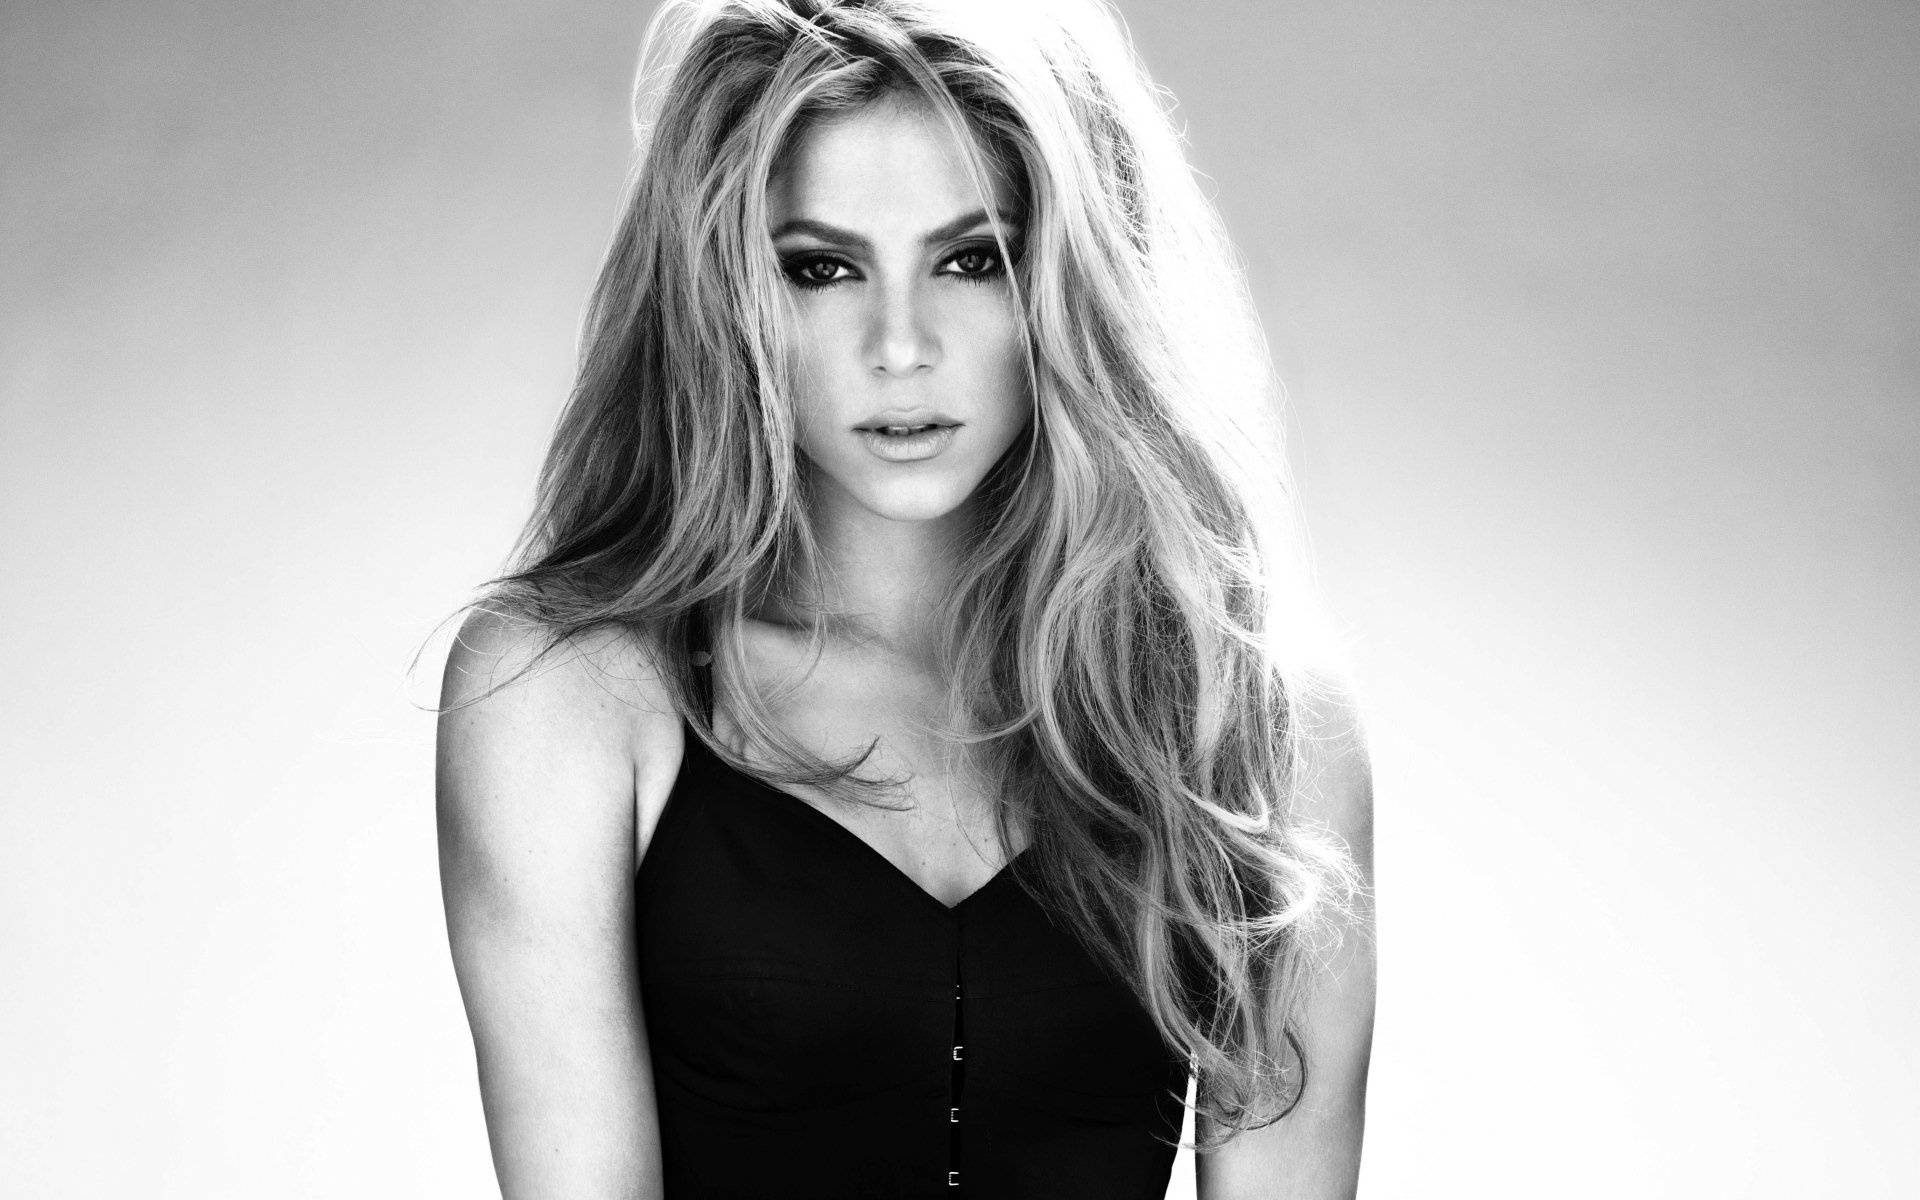 Shakira sort og hvid Wallpaper